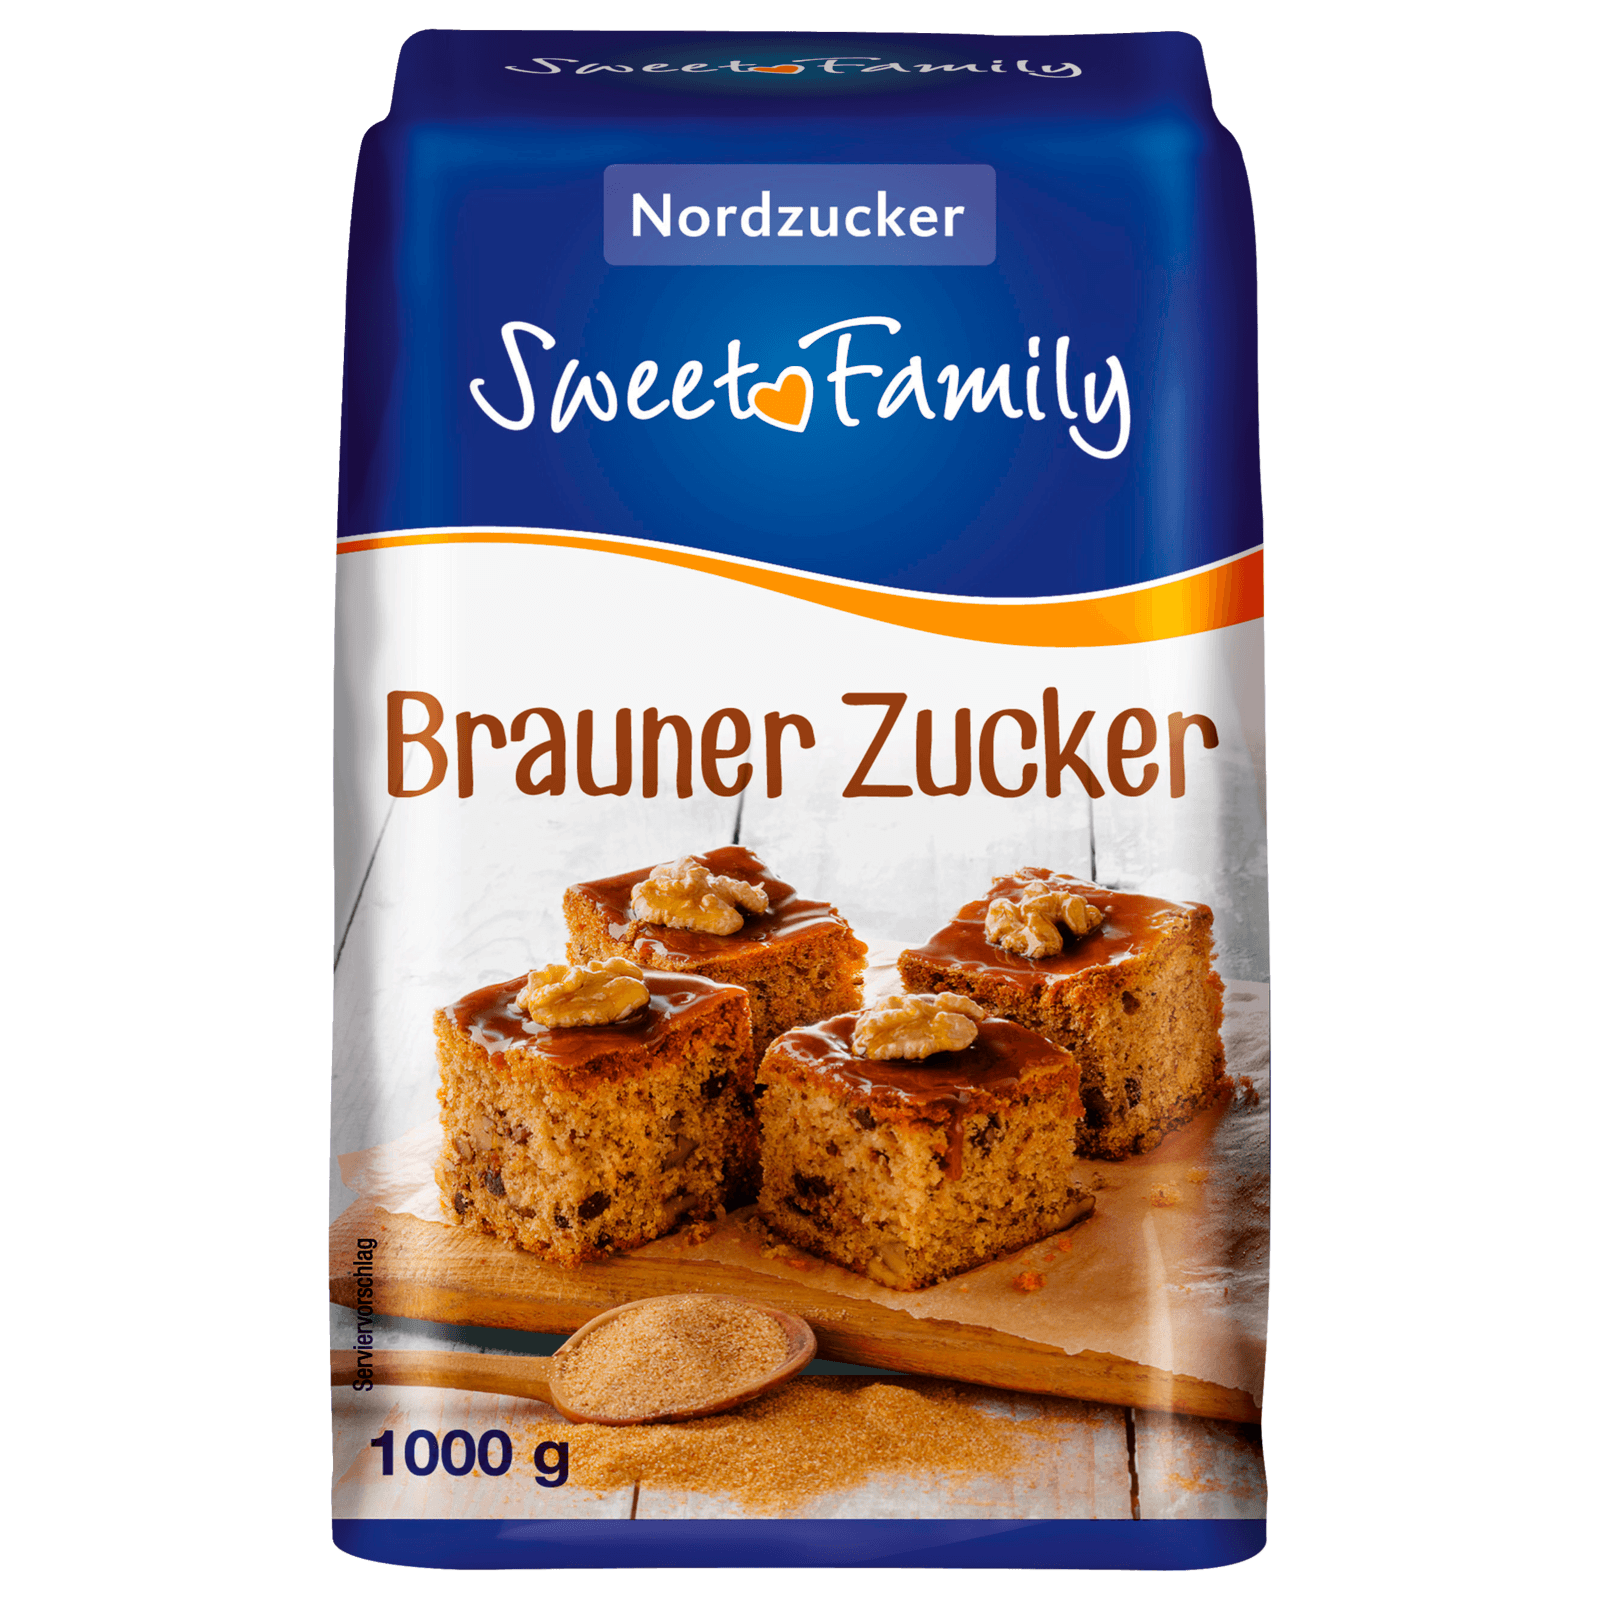 Sweet Family Brauner Zucker 1kg bei REWE online bestellen!